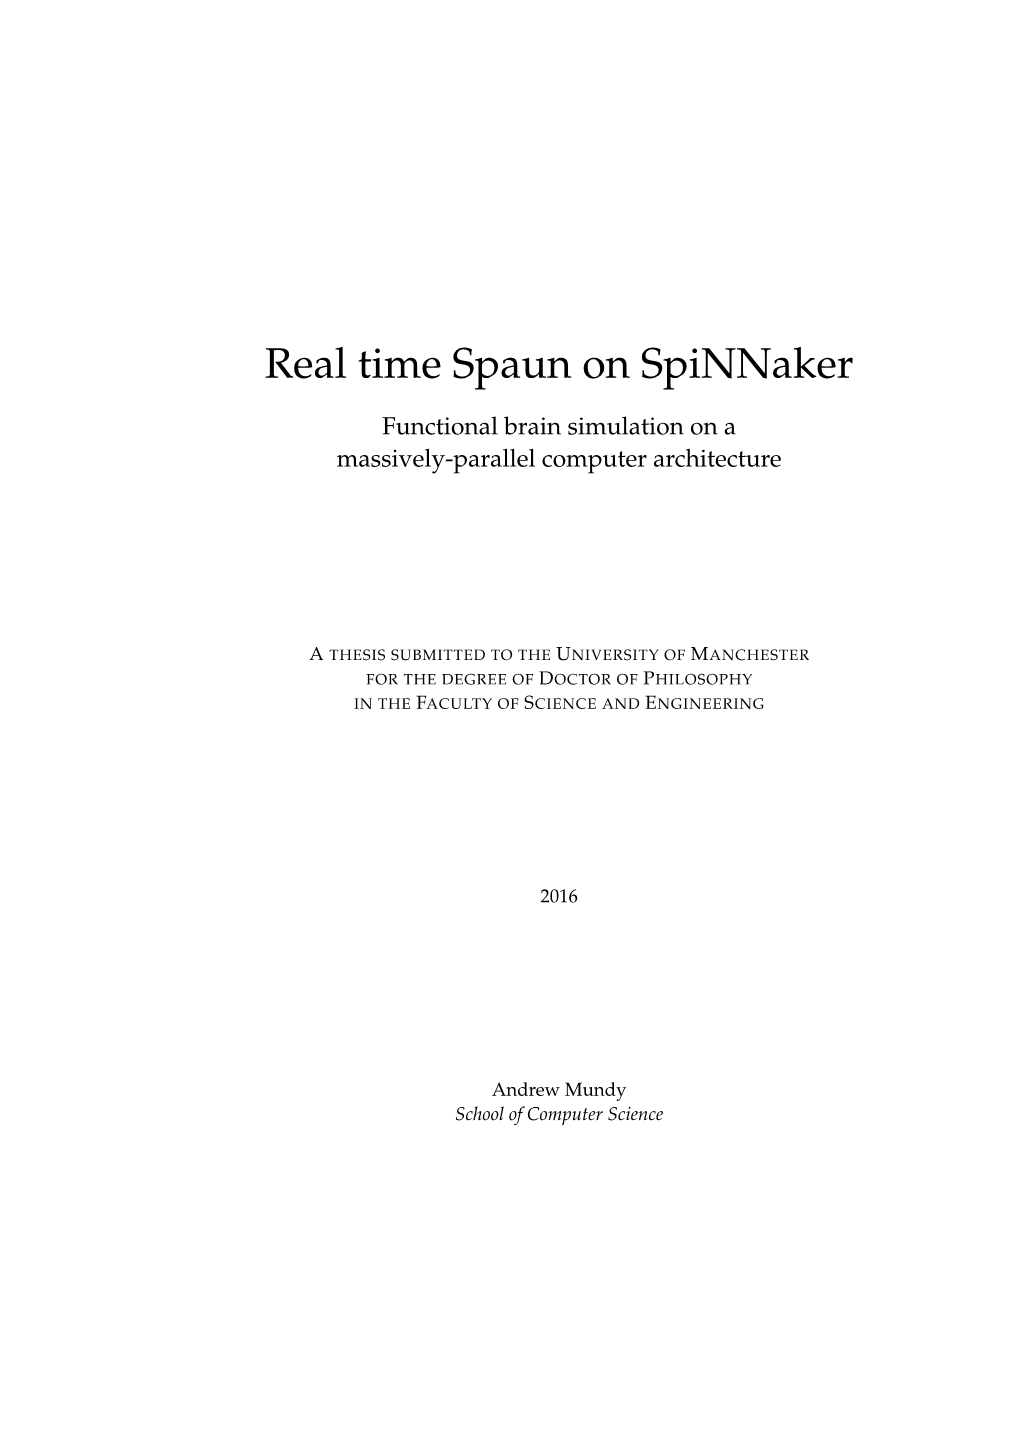 Real Time Spaun on Spinnaker